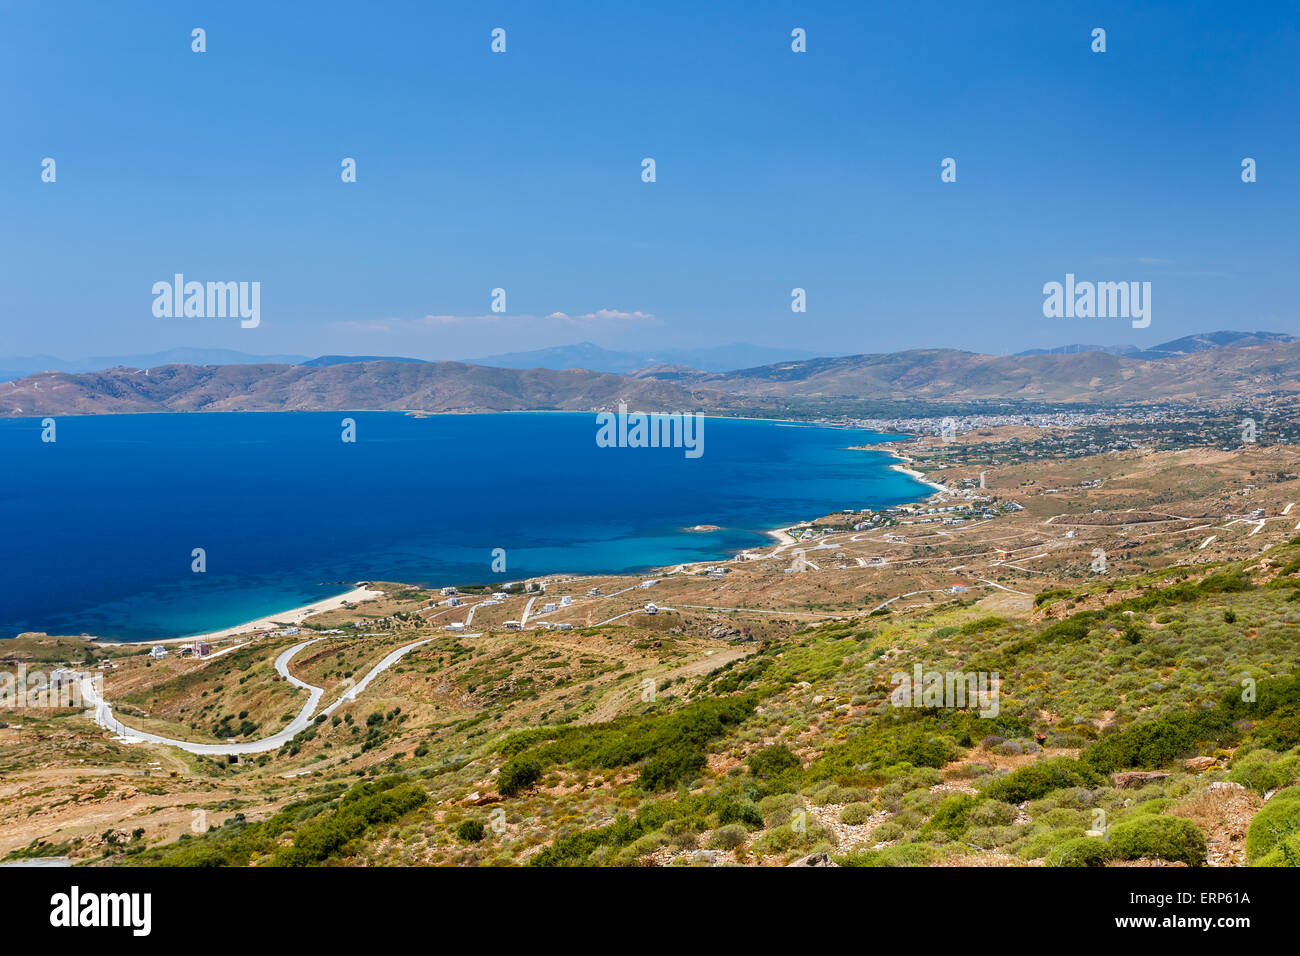 Karystos ciudad paisaje contra el azul del cielo y del mar, Evia, Grecia Foto de stock